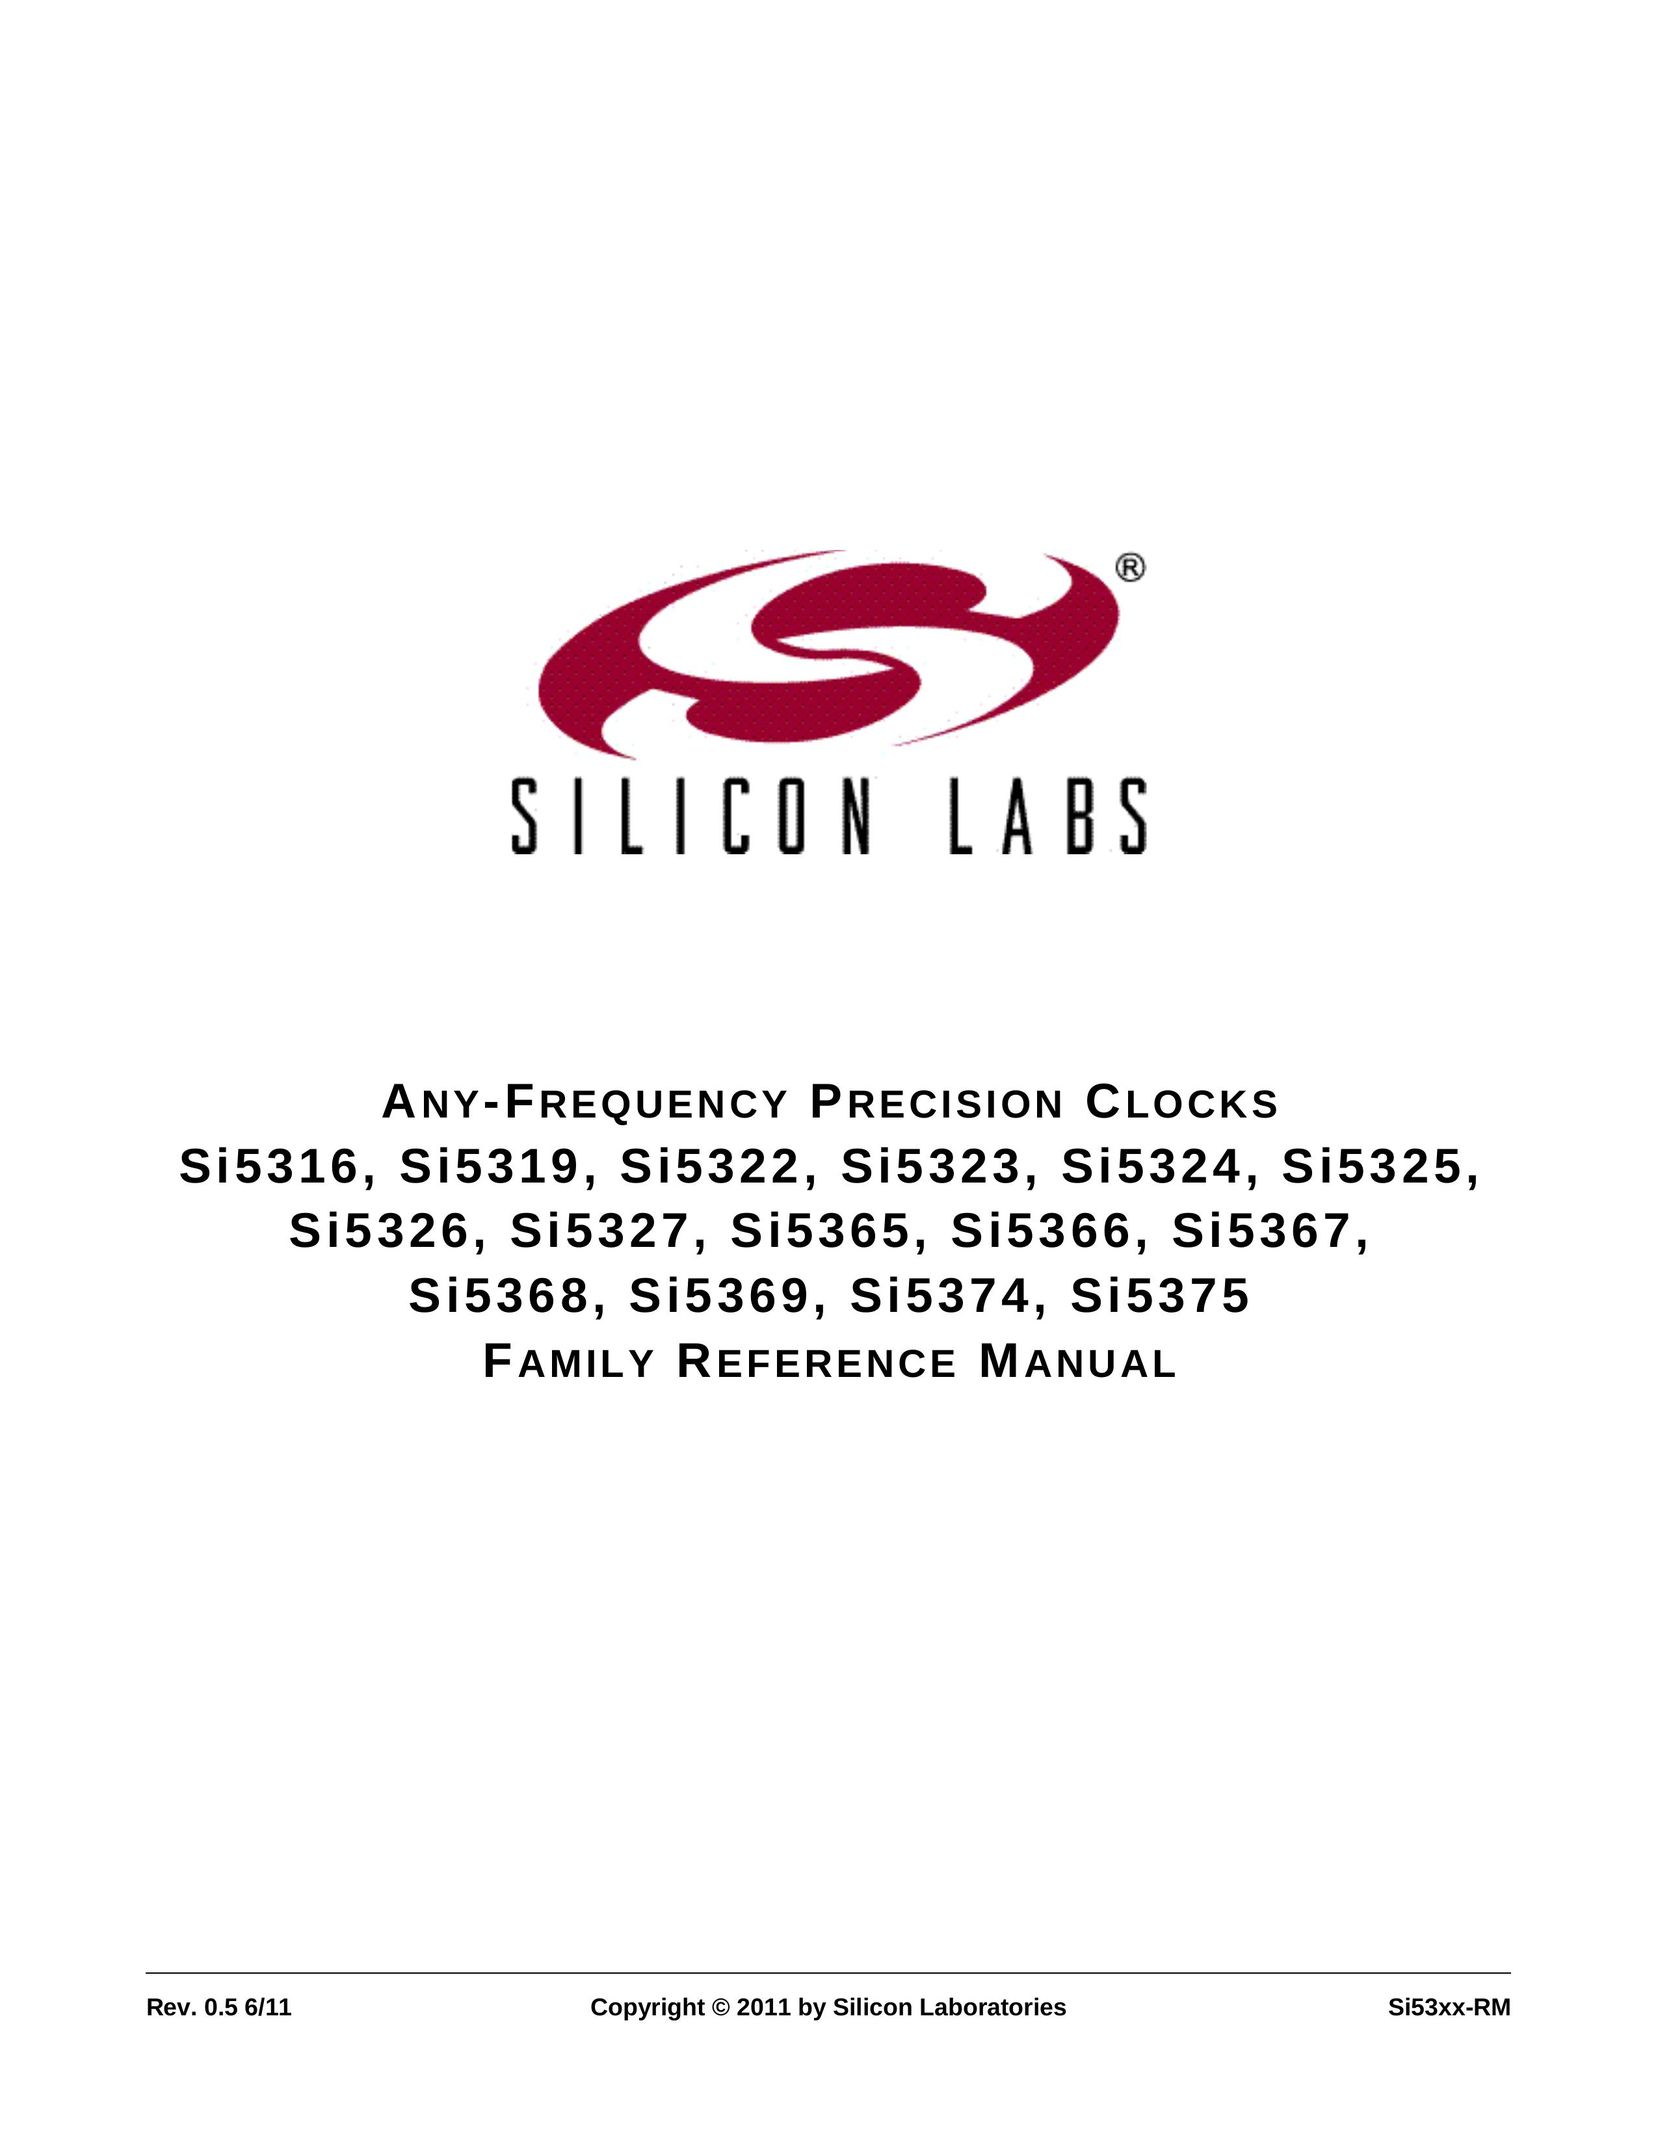 Silicon Laboratories SI5365 Clock User Manual